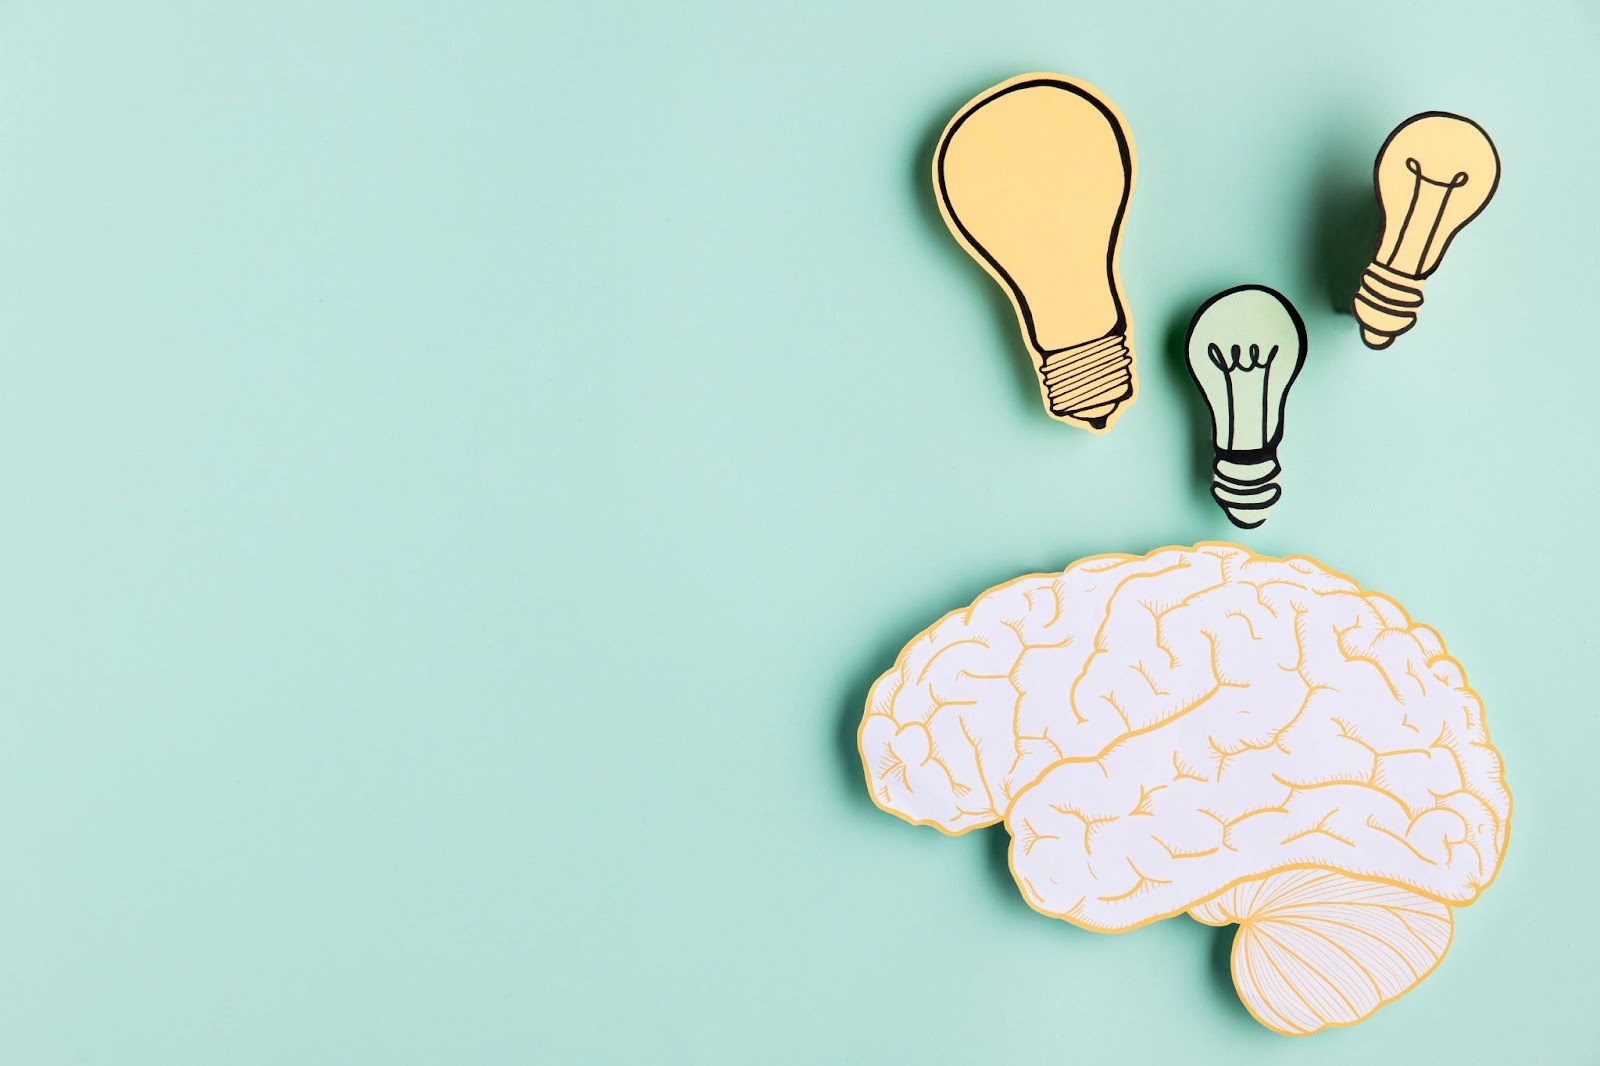 Uma montagem mostrando uma representação do cérebro tendo três lâmpadas desenhadas acima.